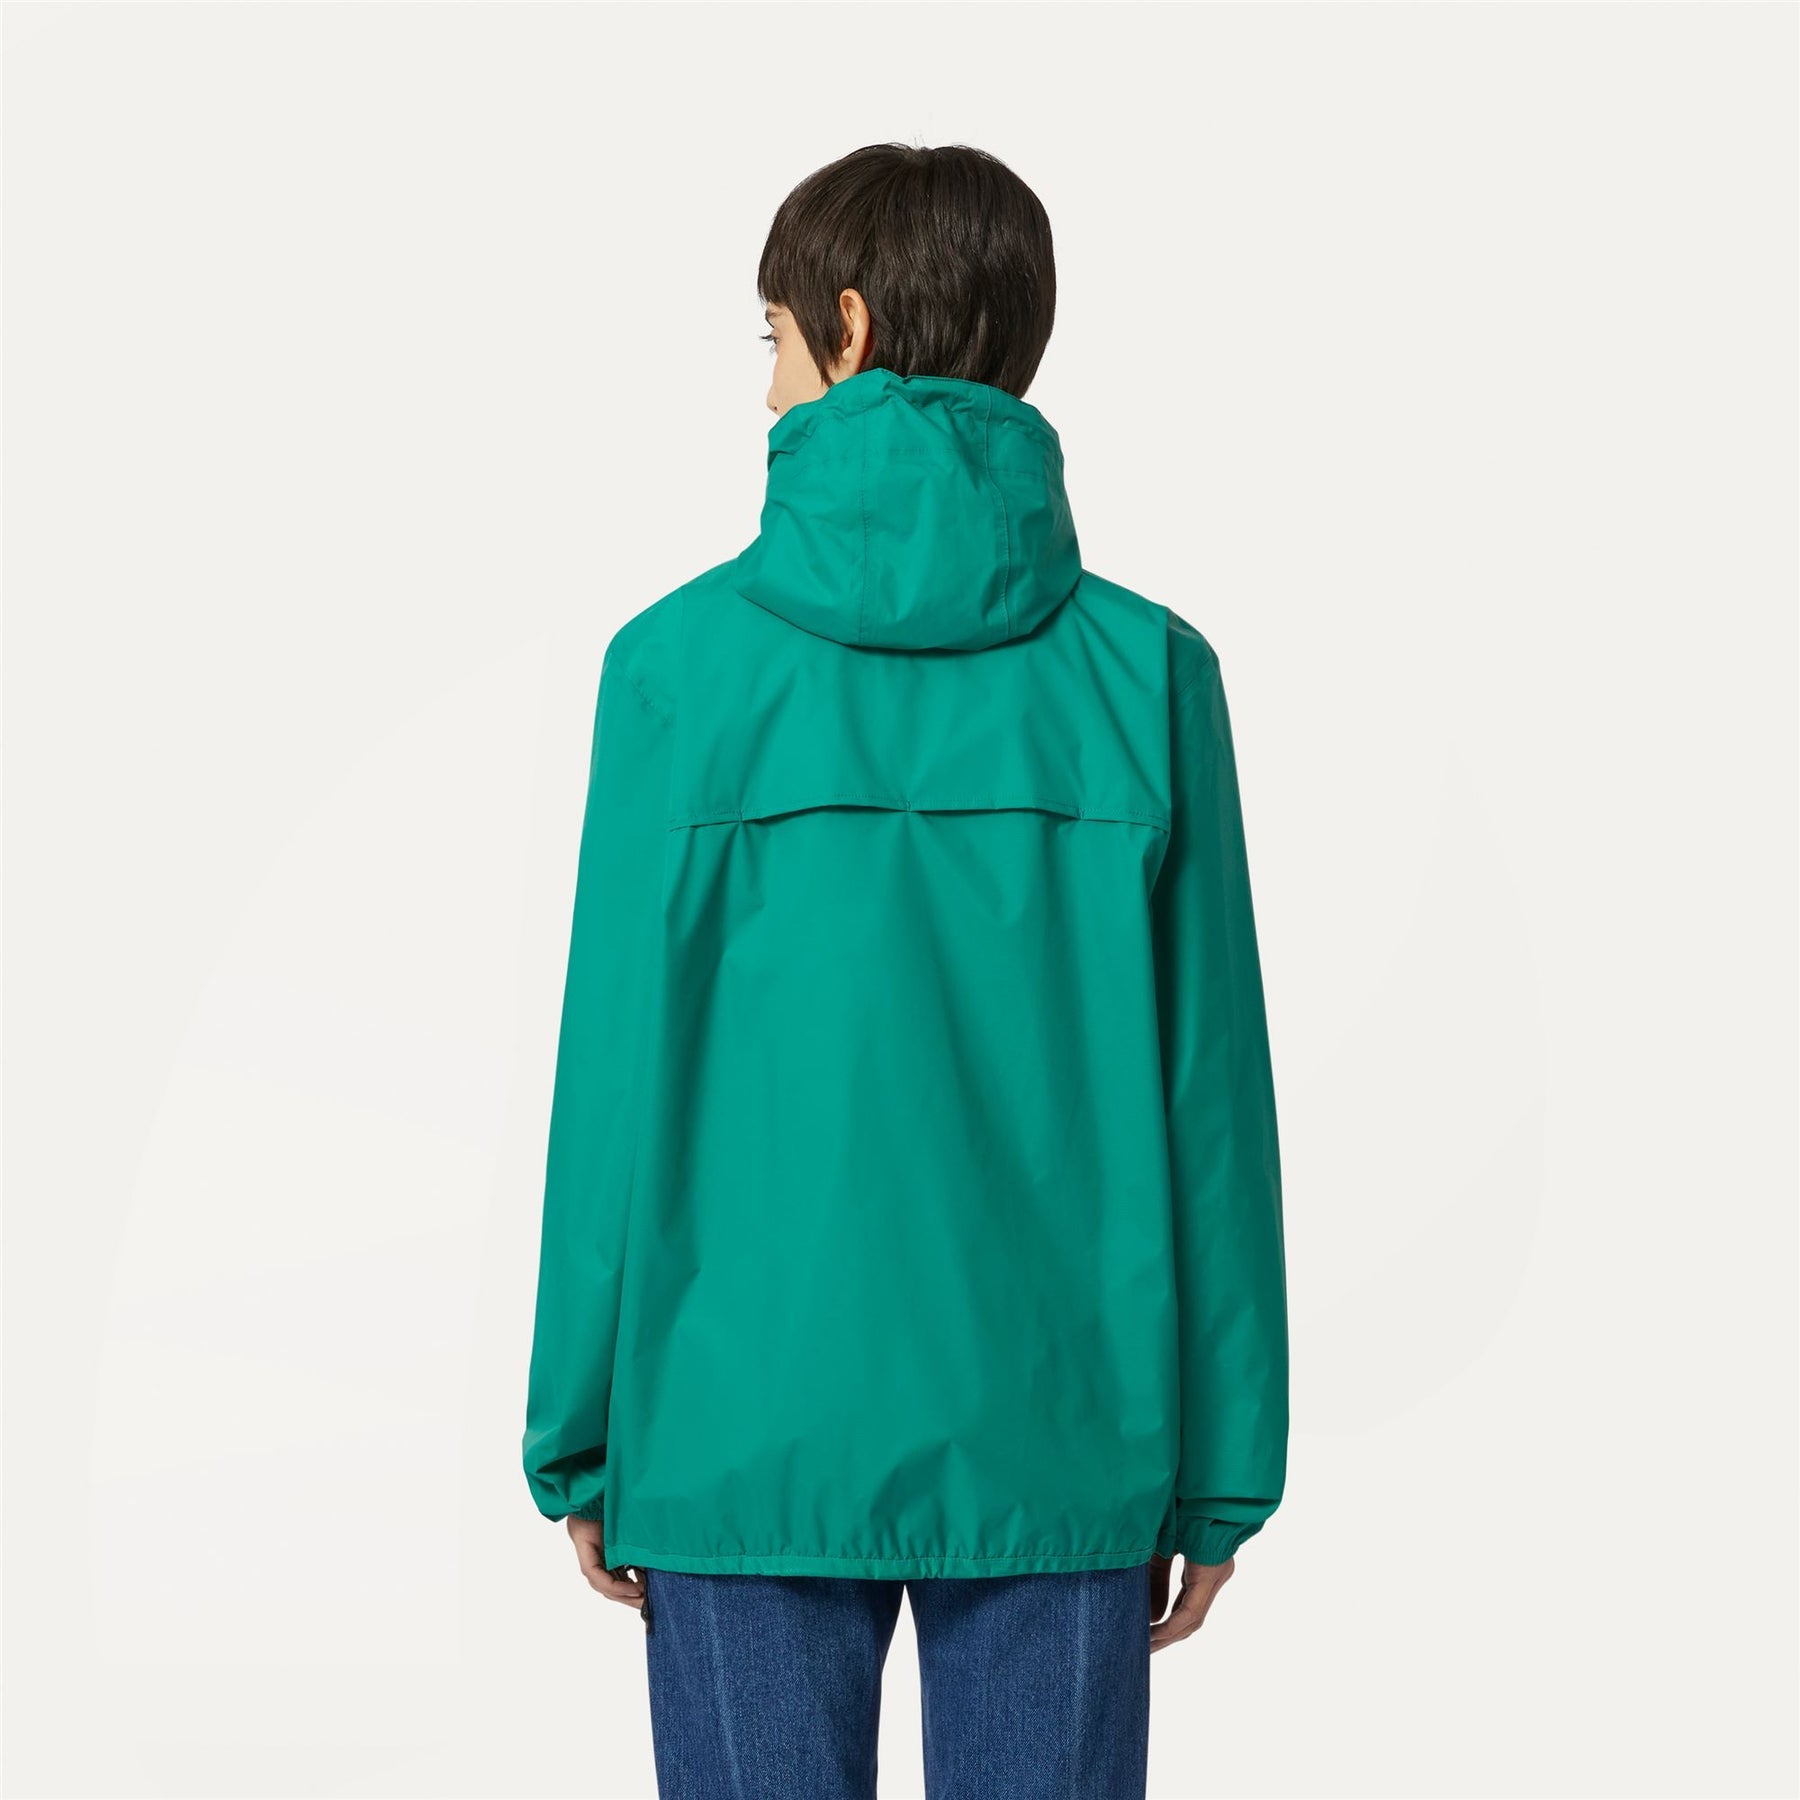 Claude - Unisex Packable Full Zip Waterproof  Rain Jacket in Green